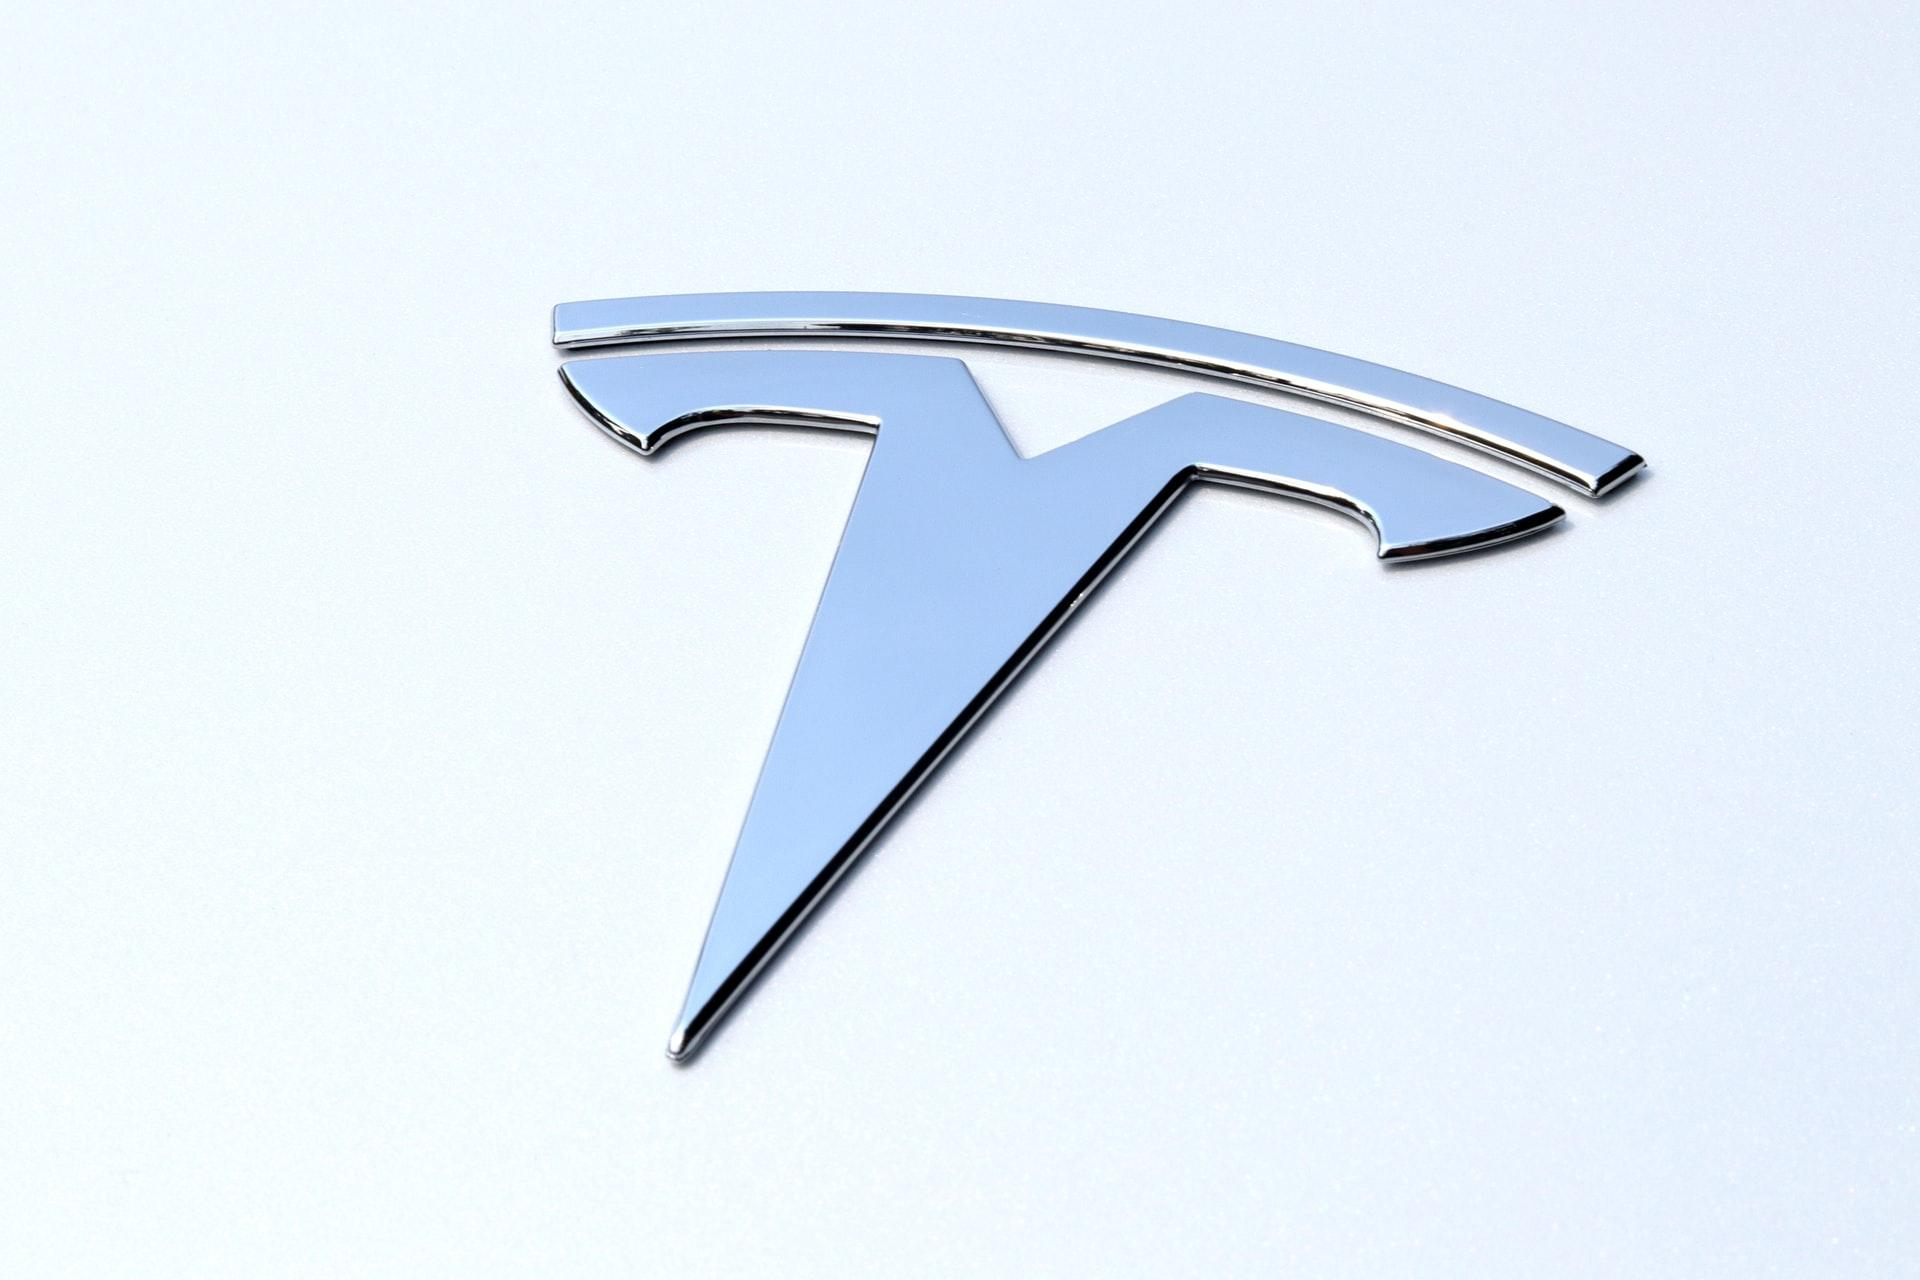 Один загиблий, 20 поранених: Tesla Model 3 потрапила у масштабну аварію - Новини технологій - Техно